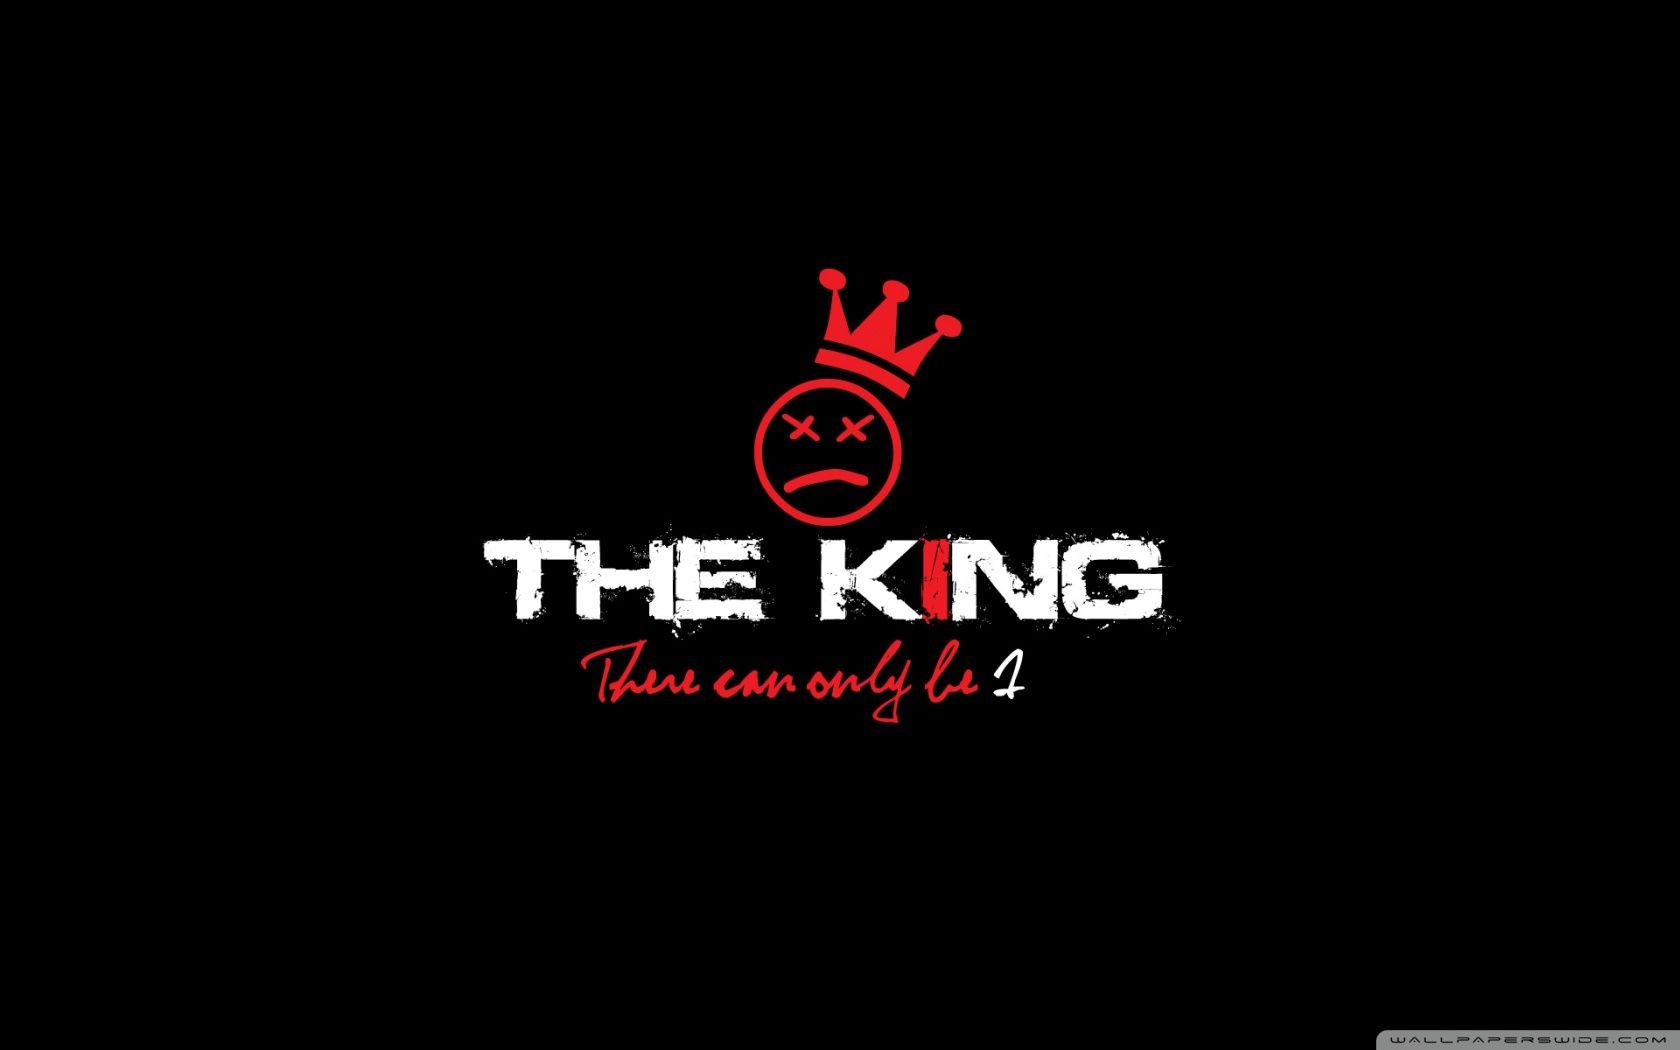 Black King Logo Wallpapers